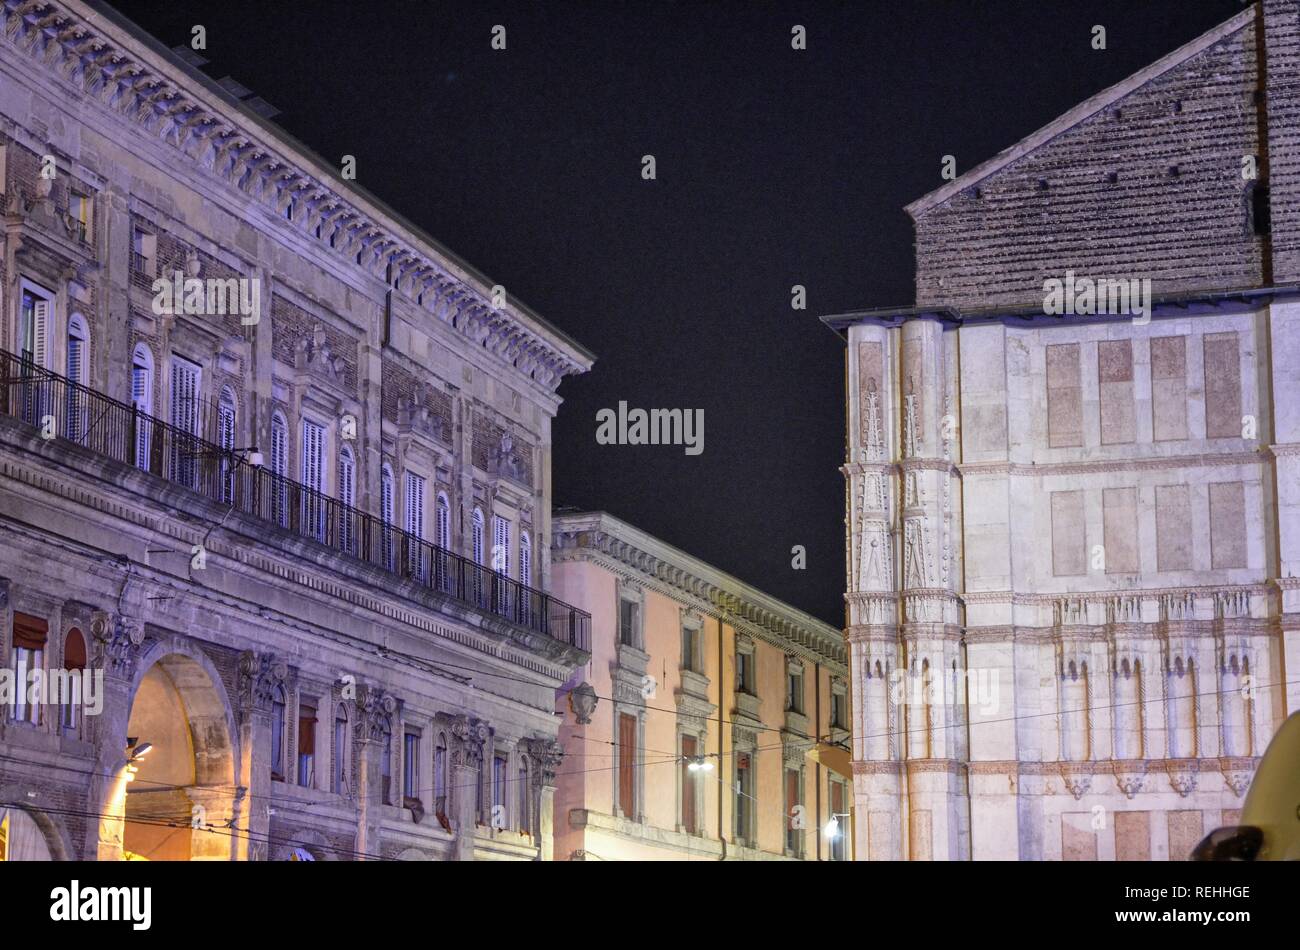 Bologne, Emilie-Romagne, Italie. En décembre 2018. La Piazza Maggiore, la nuit, en vue de la fête du Nouvel An, c'est de monde. On remarque la larg Banque D'Images